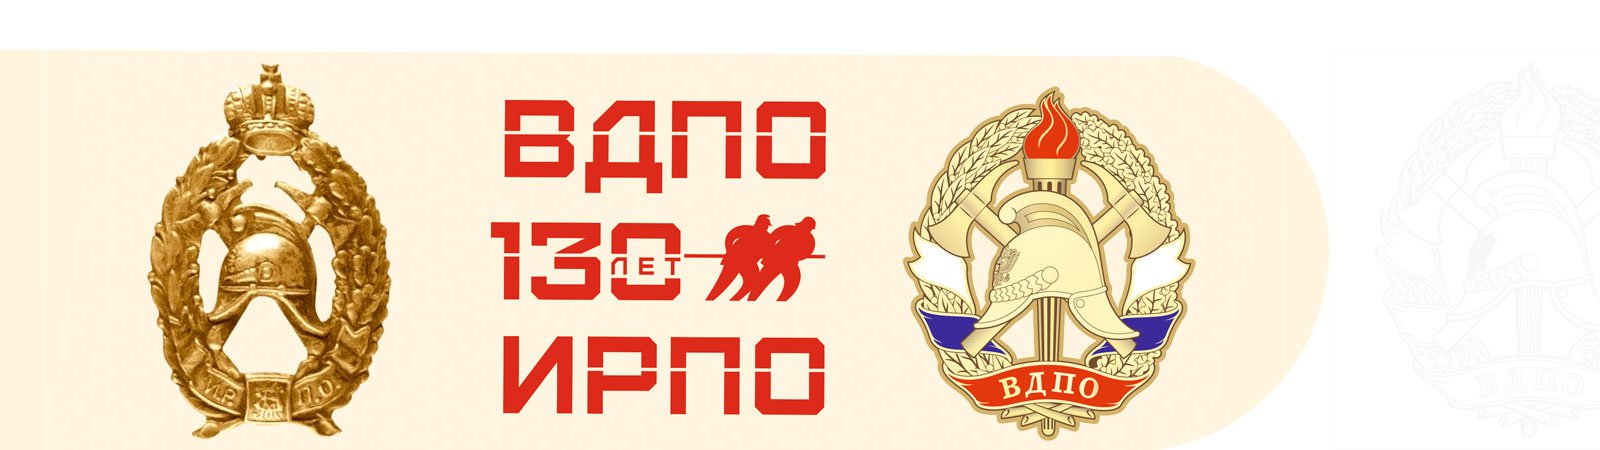 Флаг пожарного общества. 130 Лет ВДПО. ВДПО логотип. ЦС ВДПО. Знак 130 лет ВДПО.